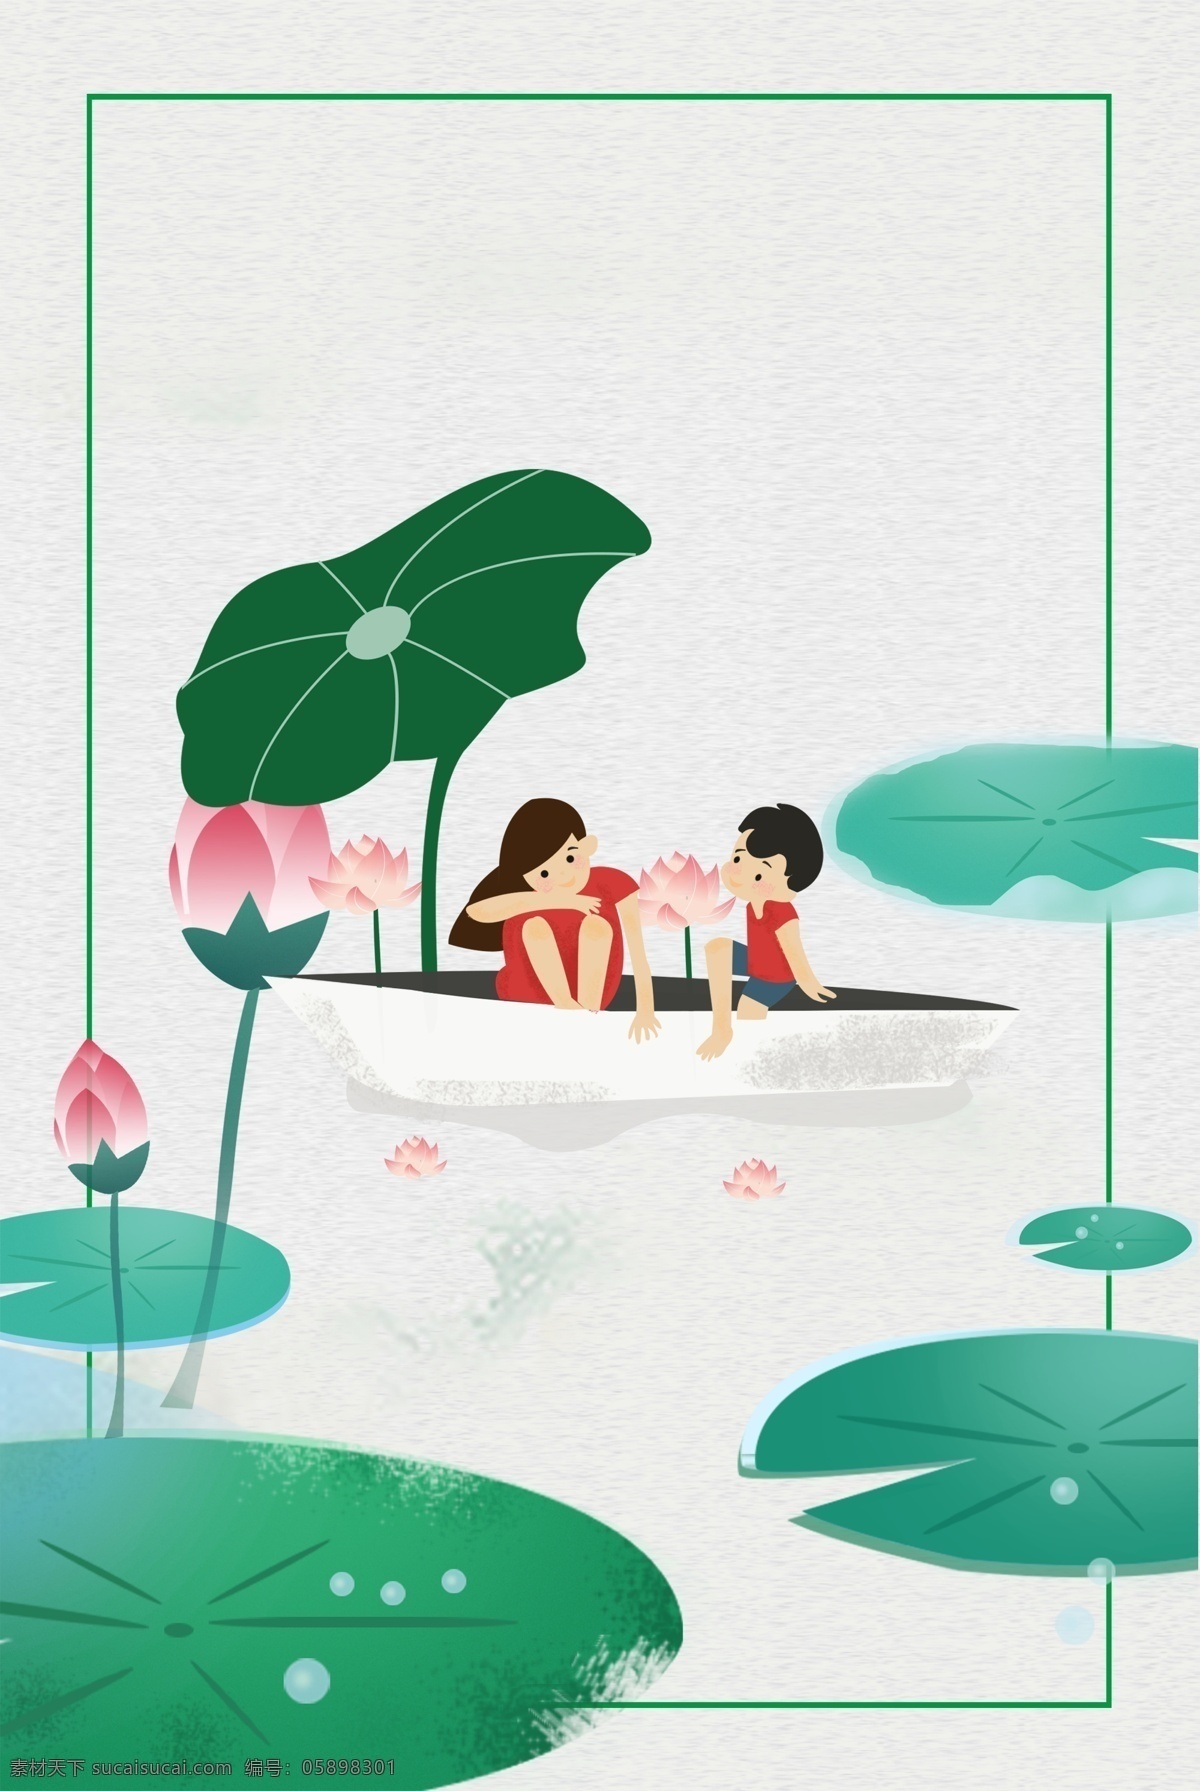 二十四节气 立夏 海报 猪年立夏 农历 可爱 夏天 夏日 植物 池塘